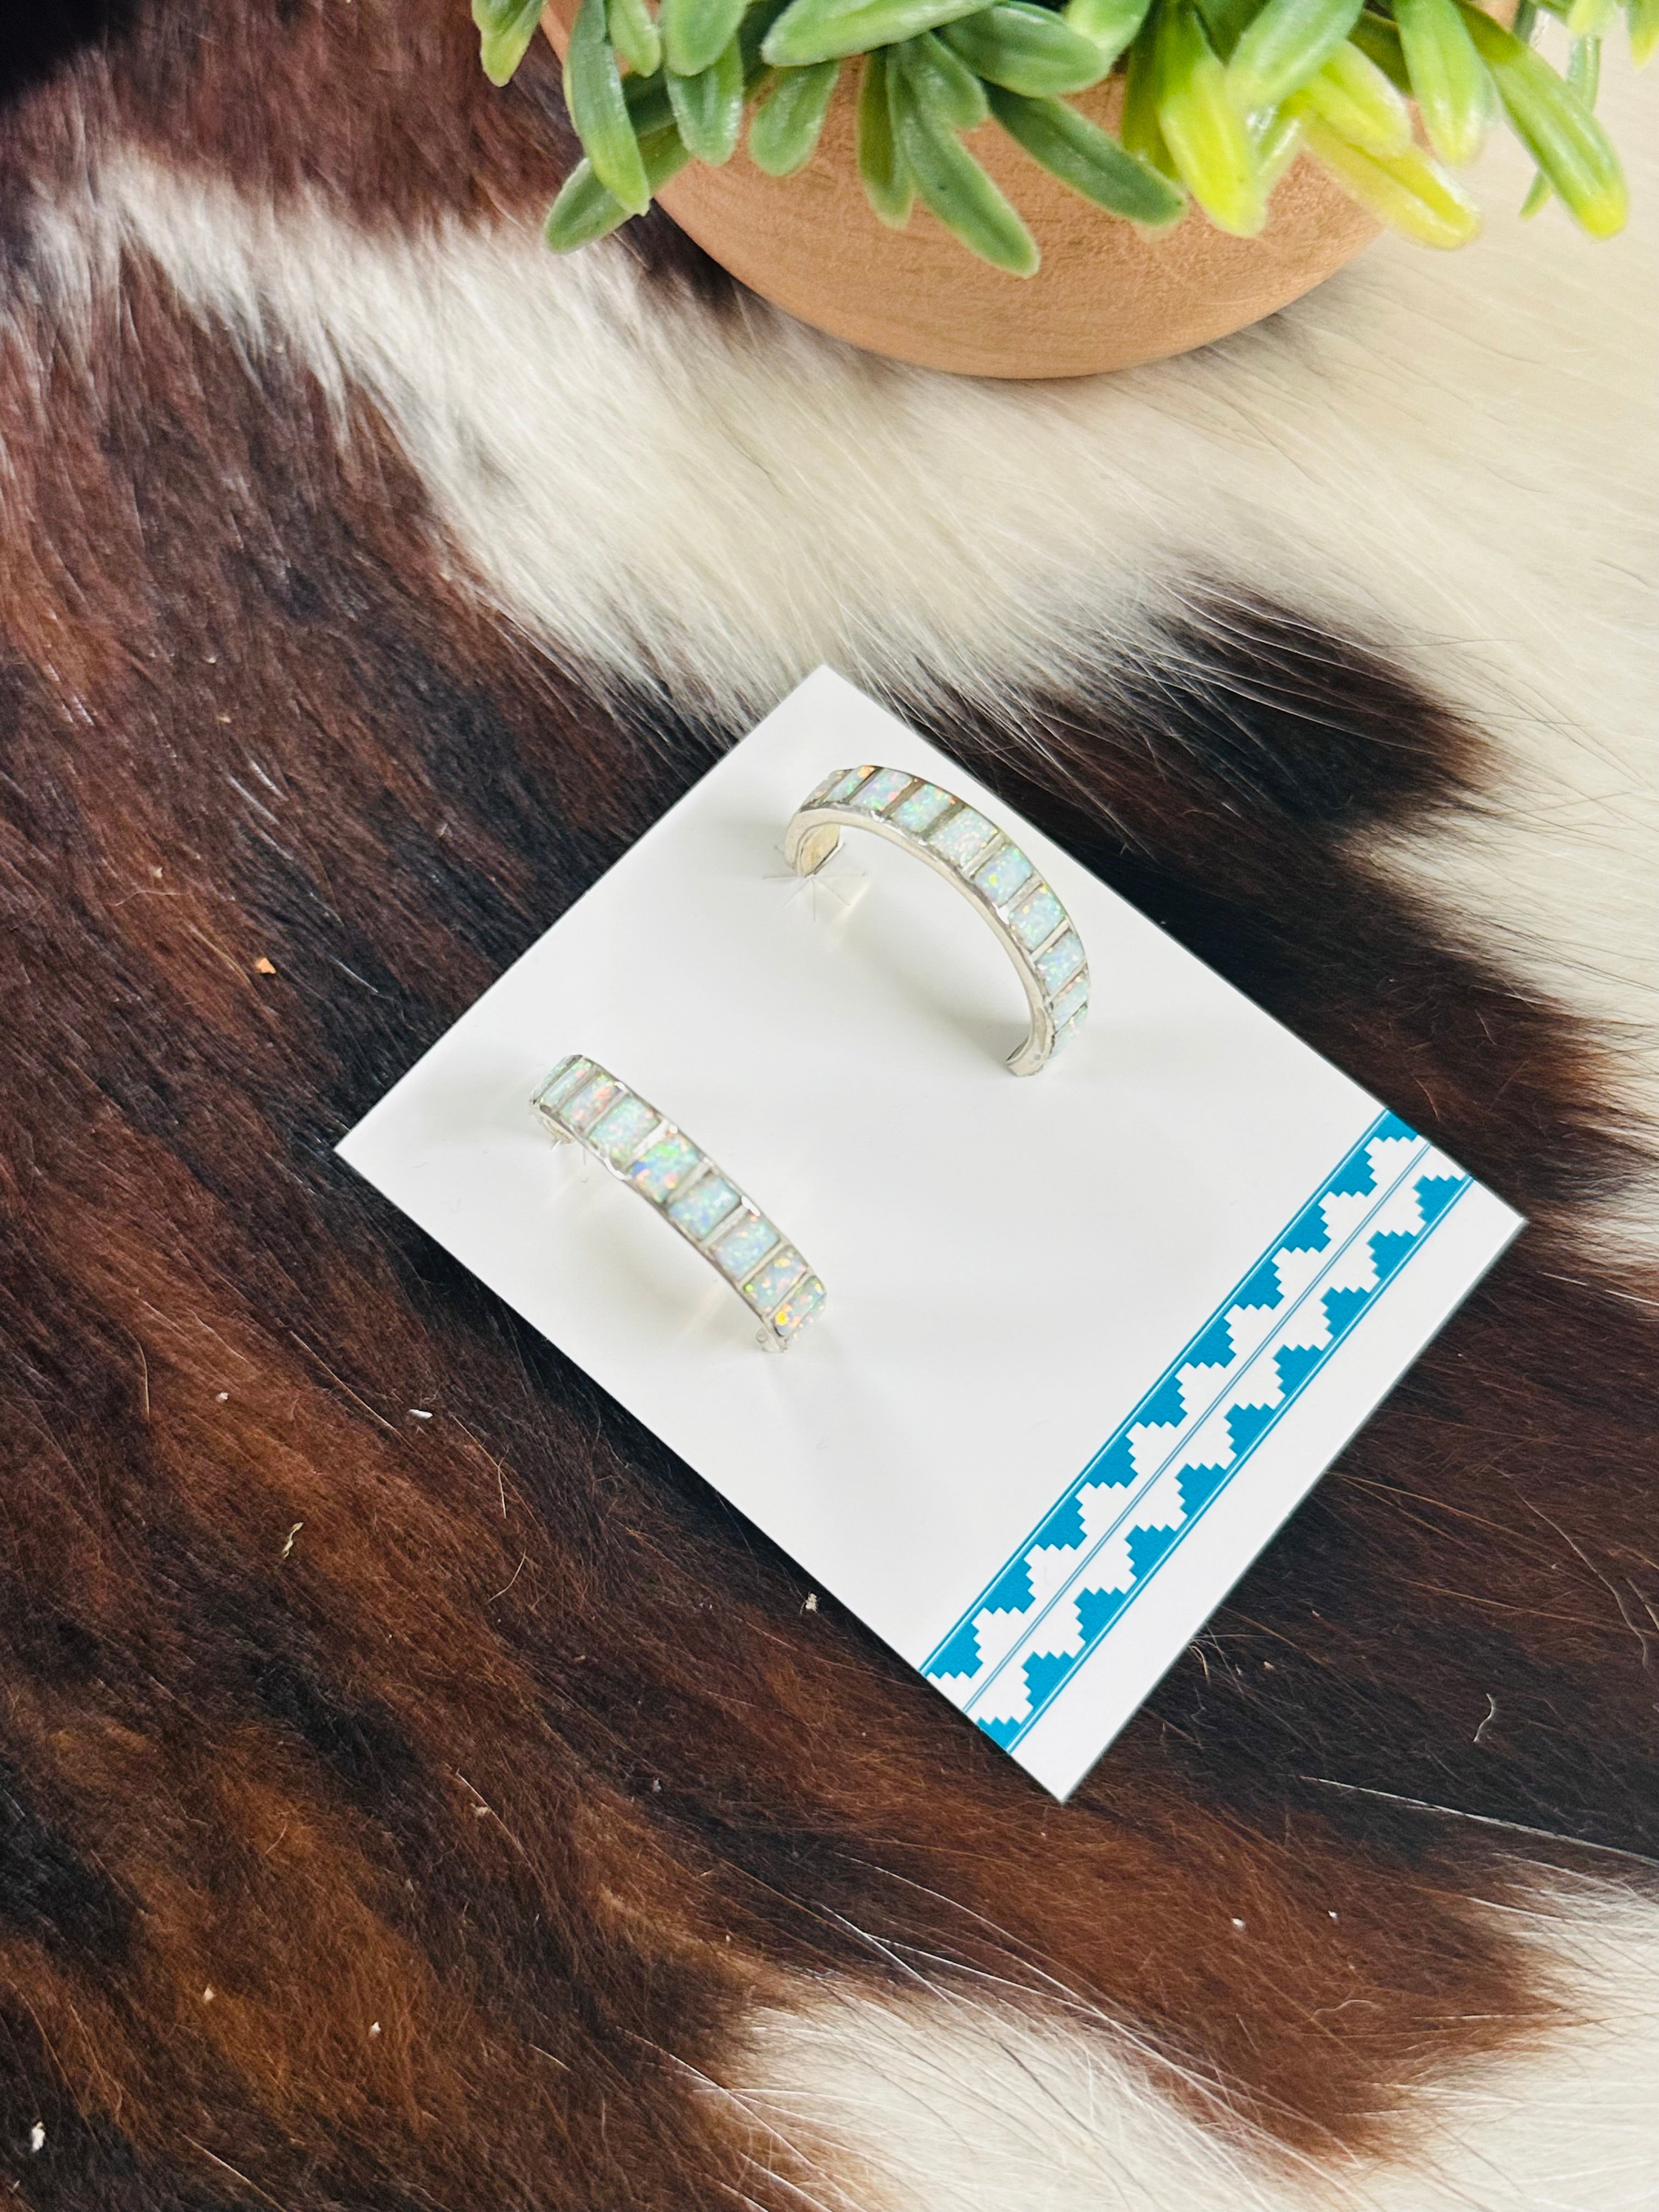 Navajo Made White Opal & Sterling Silver Hoop Earrings